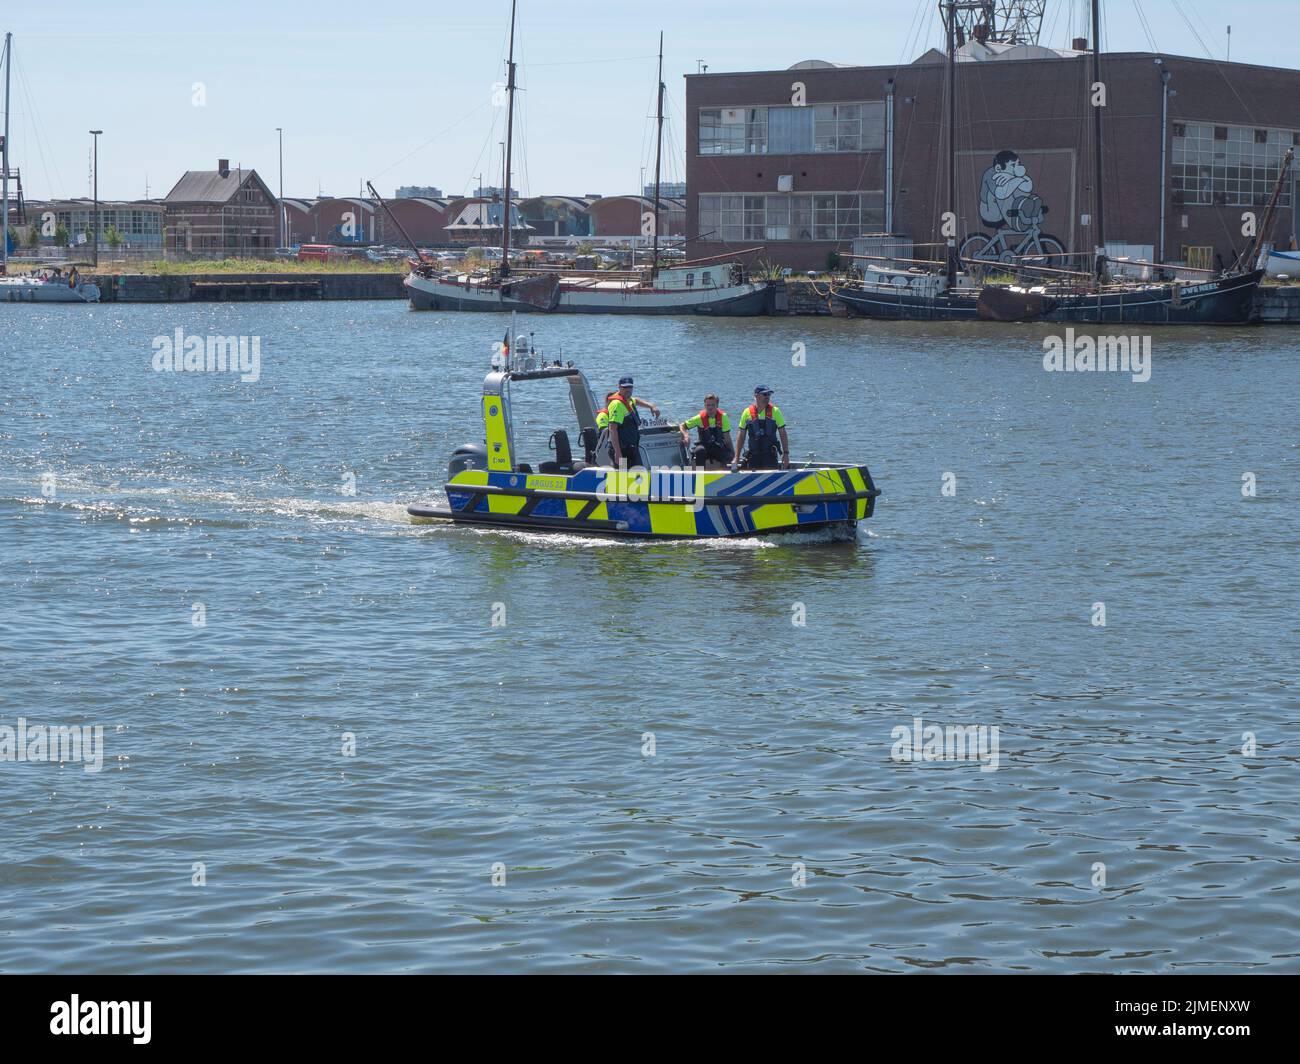 Anversa, Belgio, 24 giugno 2022, la polizia marittima pattuglia con la loro barca combinata sul fiume Scheldt durante le gare di Tall Ships Foto Stock